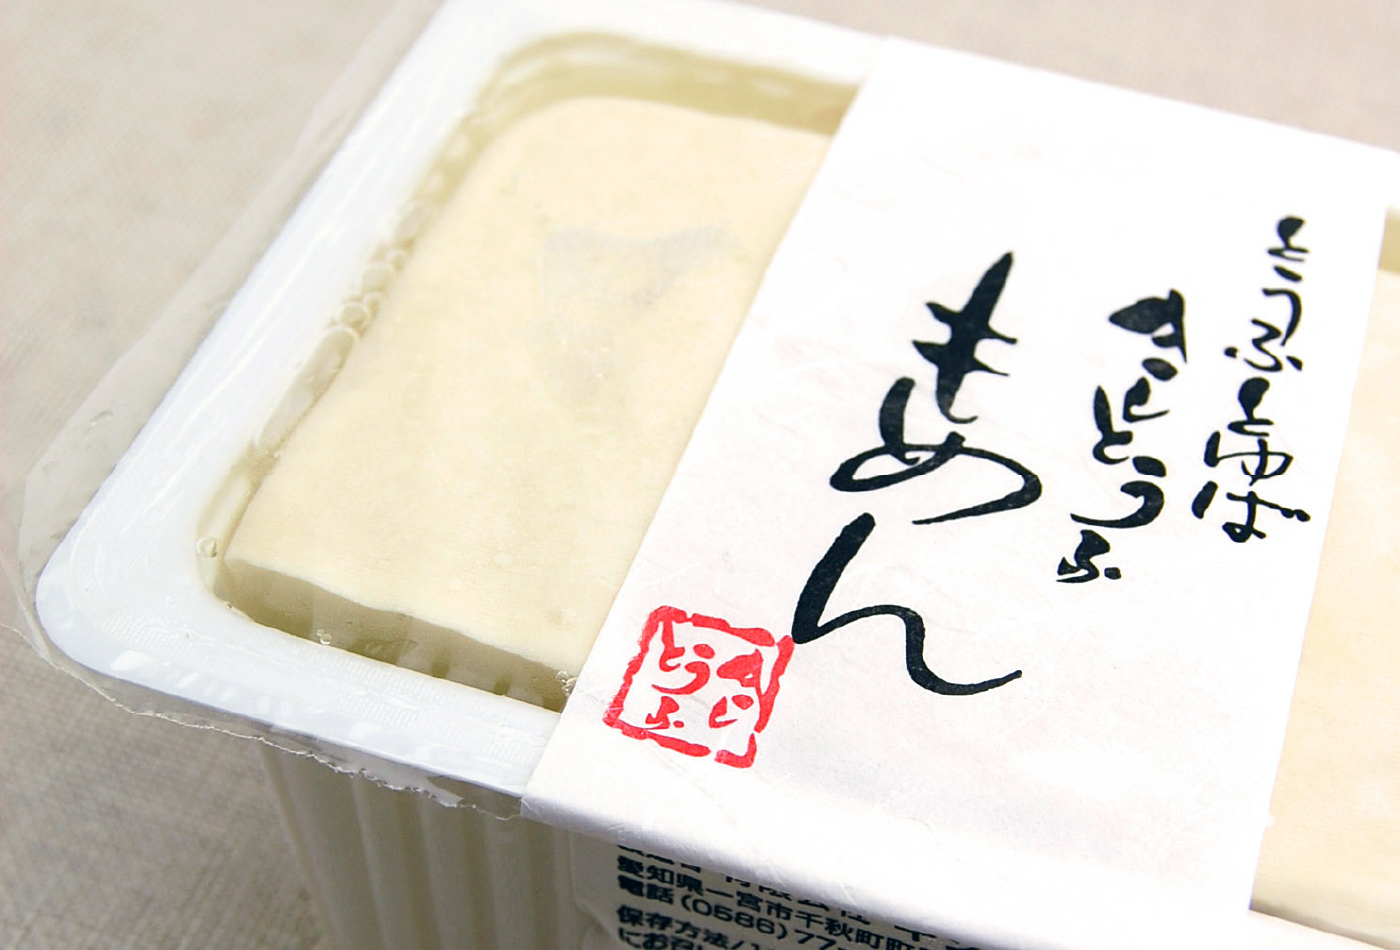 豆腐・ゆば  とうふファクトリー豆の木  手づくり豆腐と豆腐スイーツは愛知県一宮市のとうふファクトリー豆の木へ